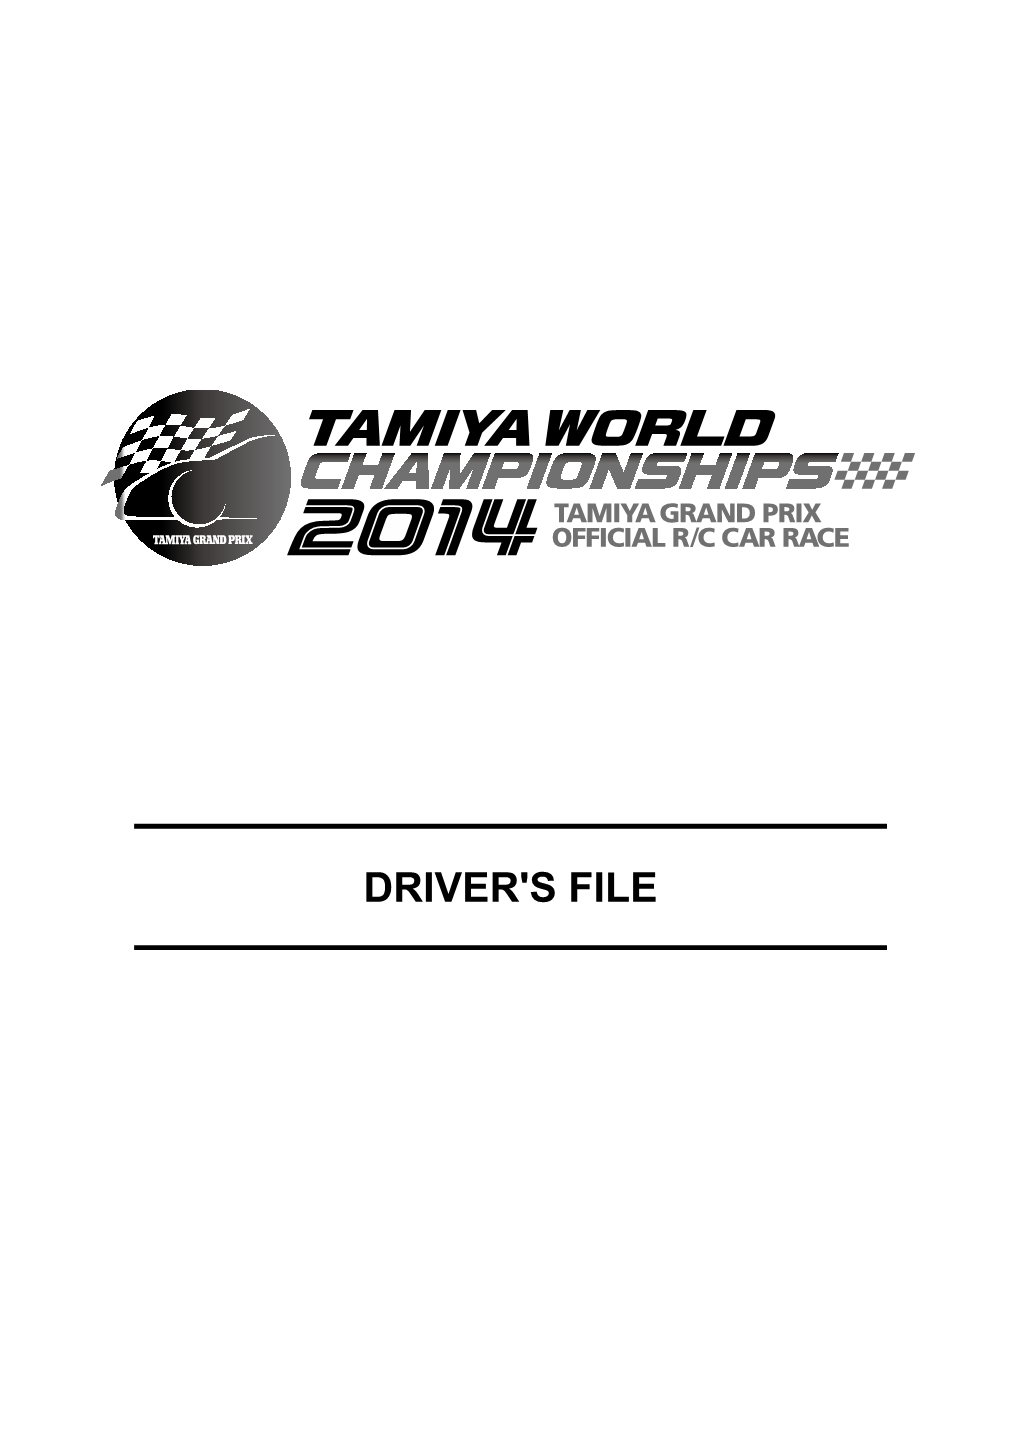 DRIVER's FILE Dear Tamiya World Championship Drivers